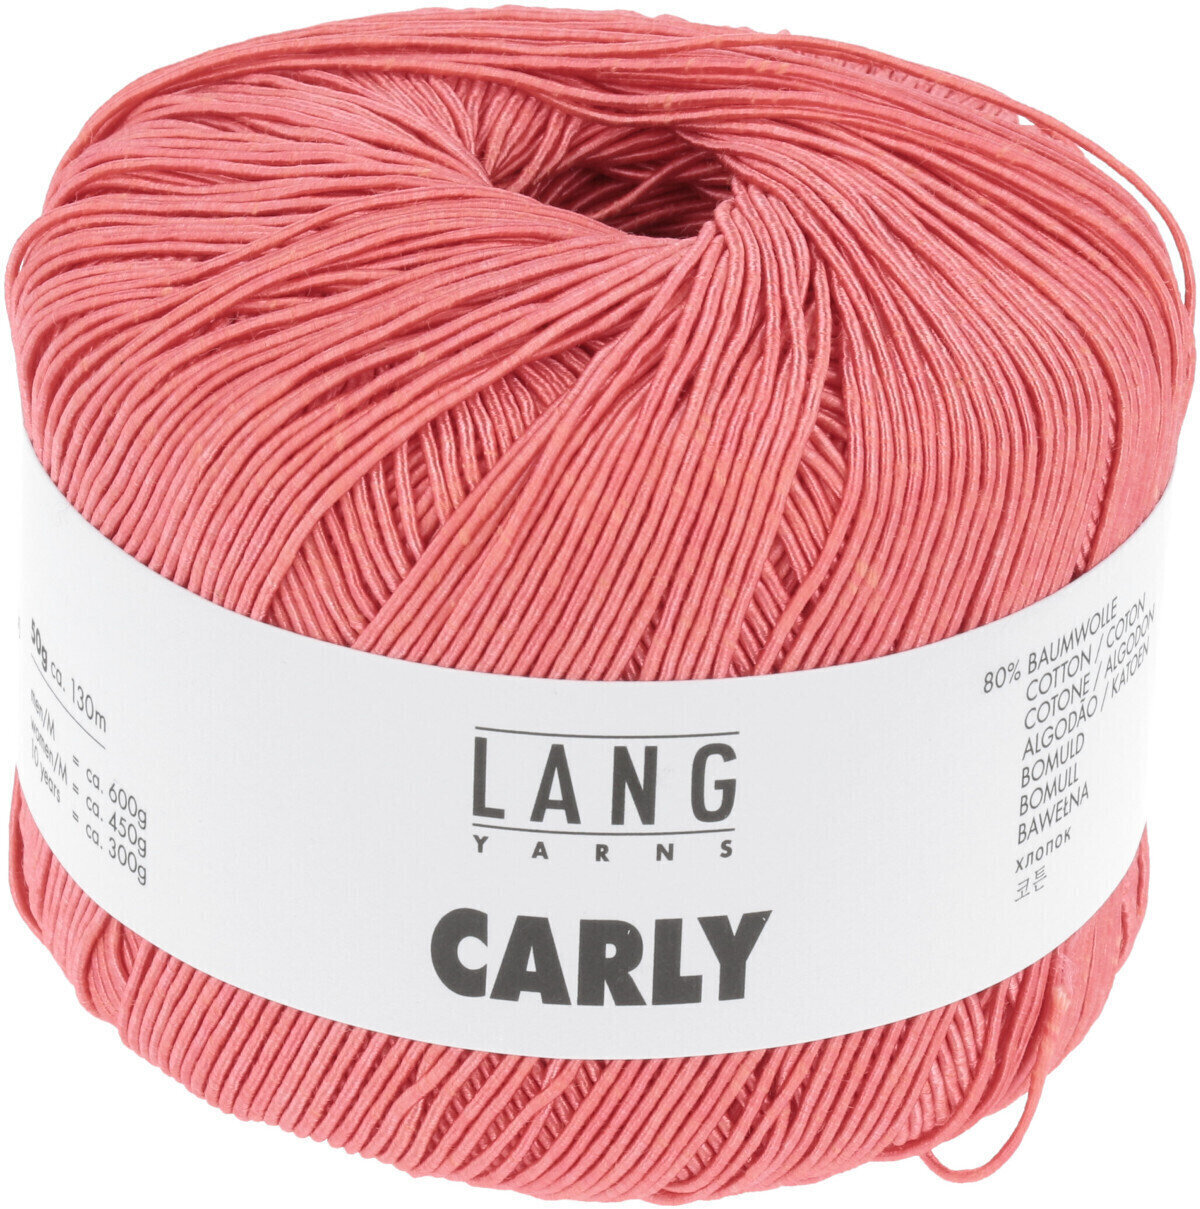 Knitting Yarn Lang Yarns Carly 0027 Coral